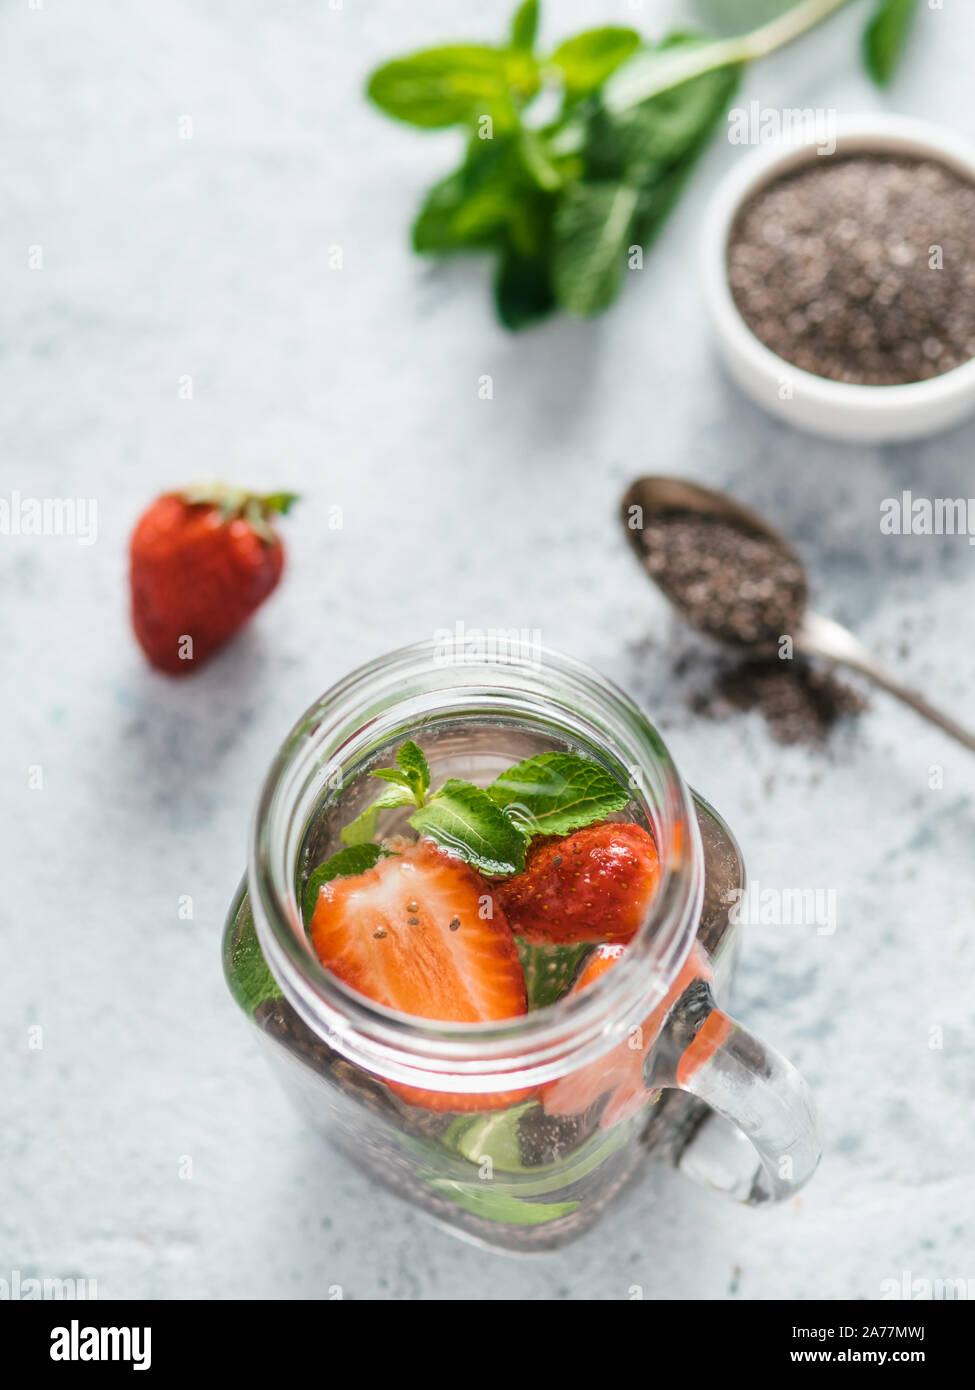 Ansicht von oben Chia Wasser im Marmeladenglas mit Erdbeere und Minze auf grauzement Hintergrund. Chia infundiert detox Wasser mit Beeren. Gesunde Ernährung, Getränke, Ernährung, Entgiftung Konzept. Vertikale Stockfoto